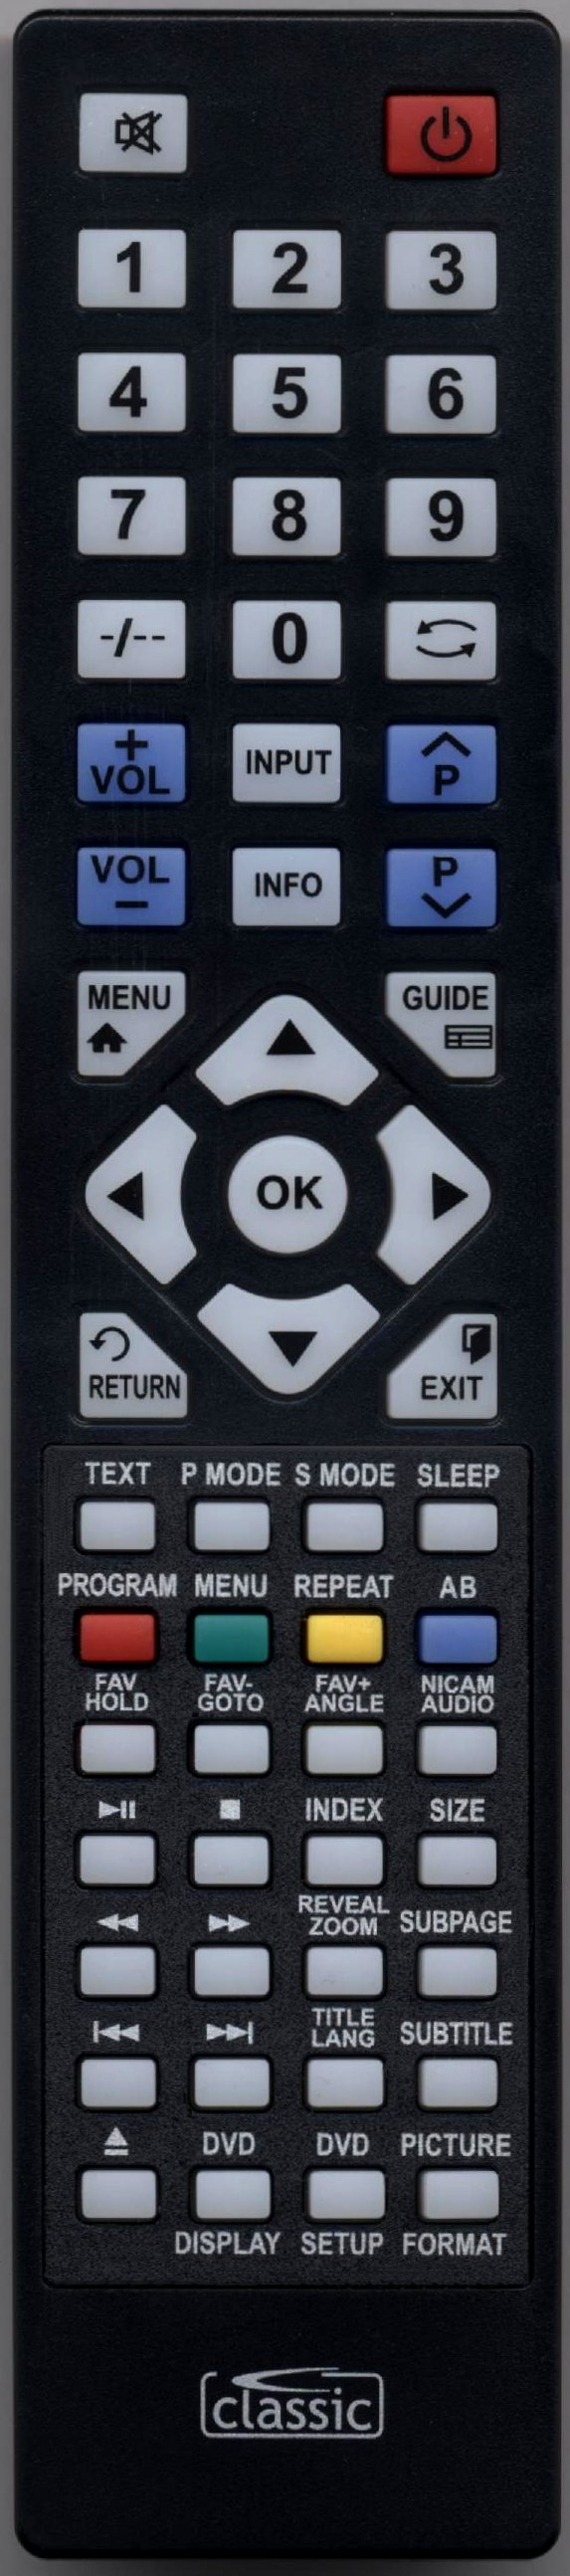 UMC X32/28C Remote Control